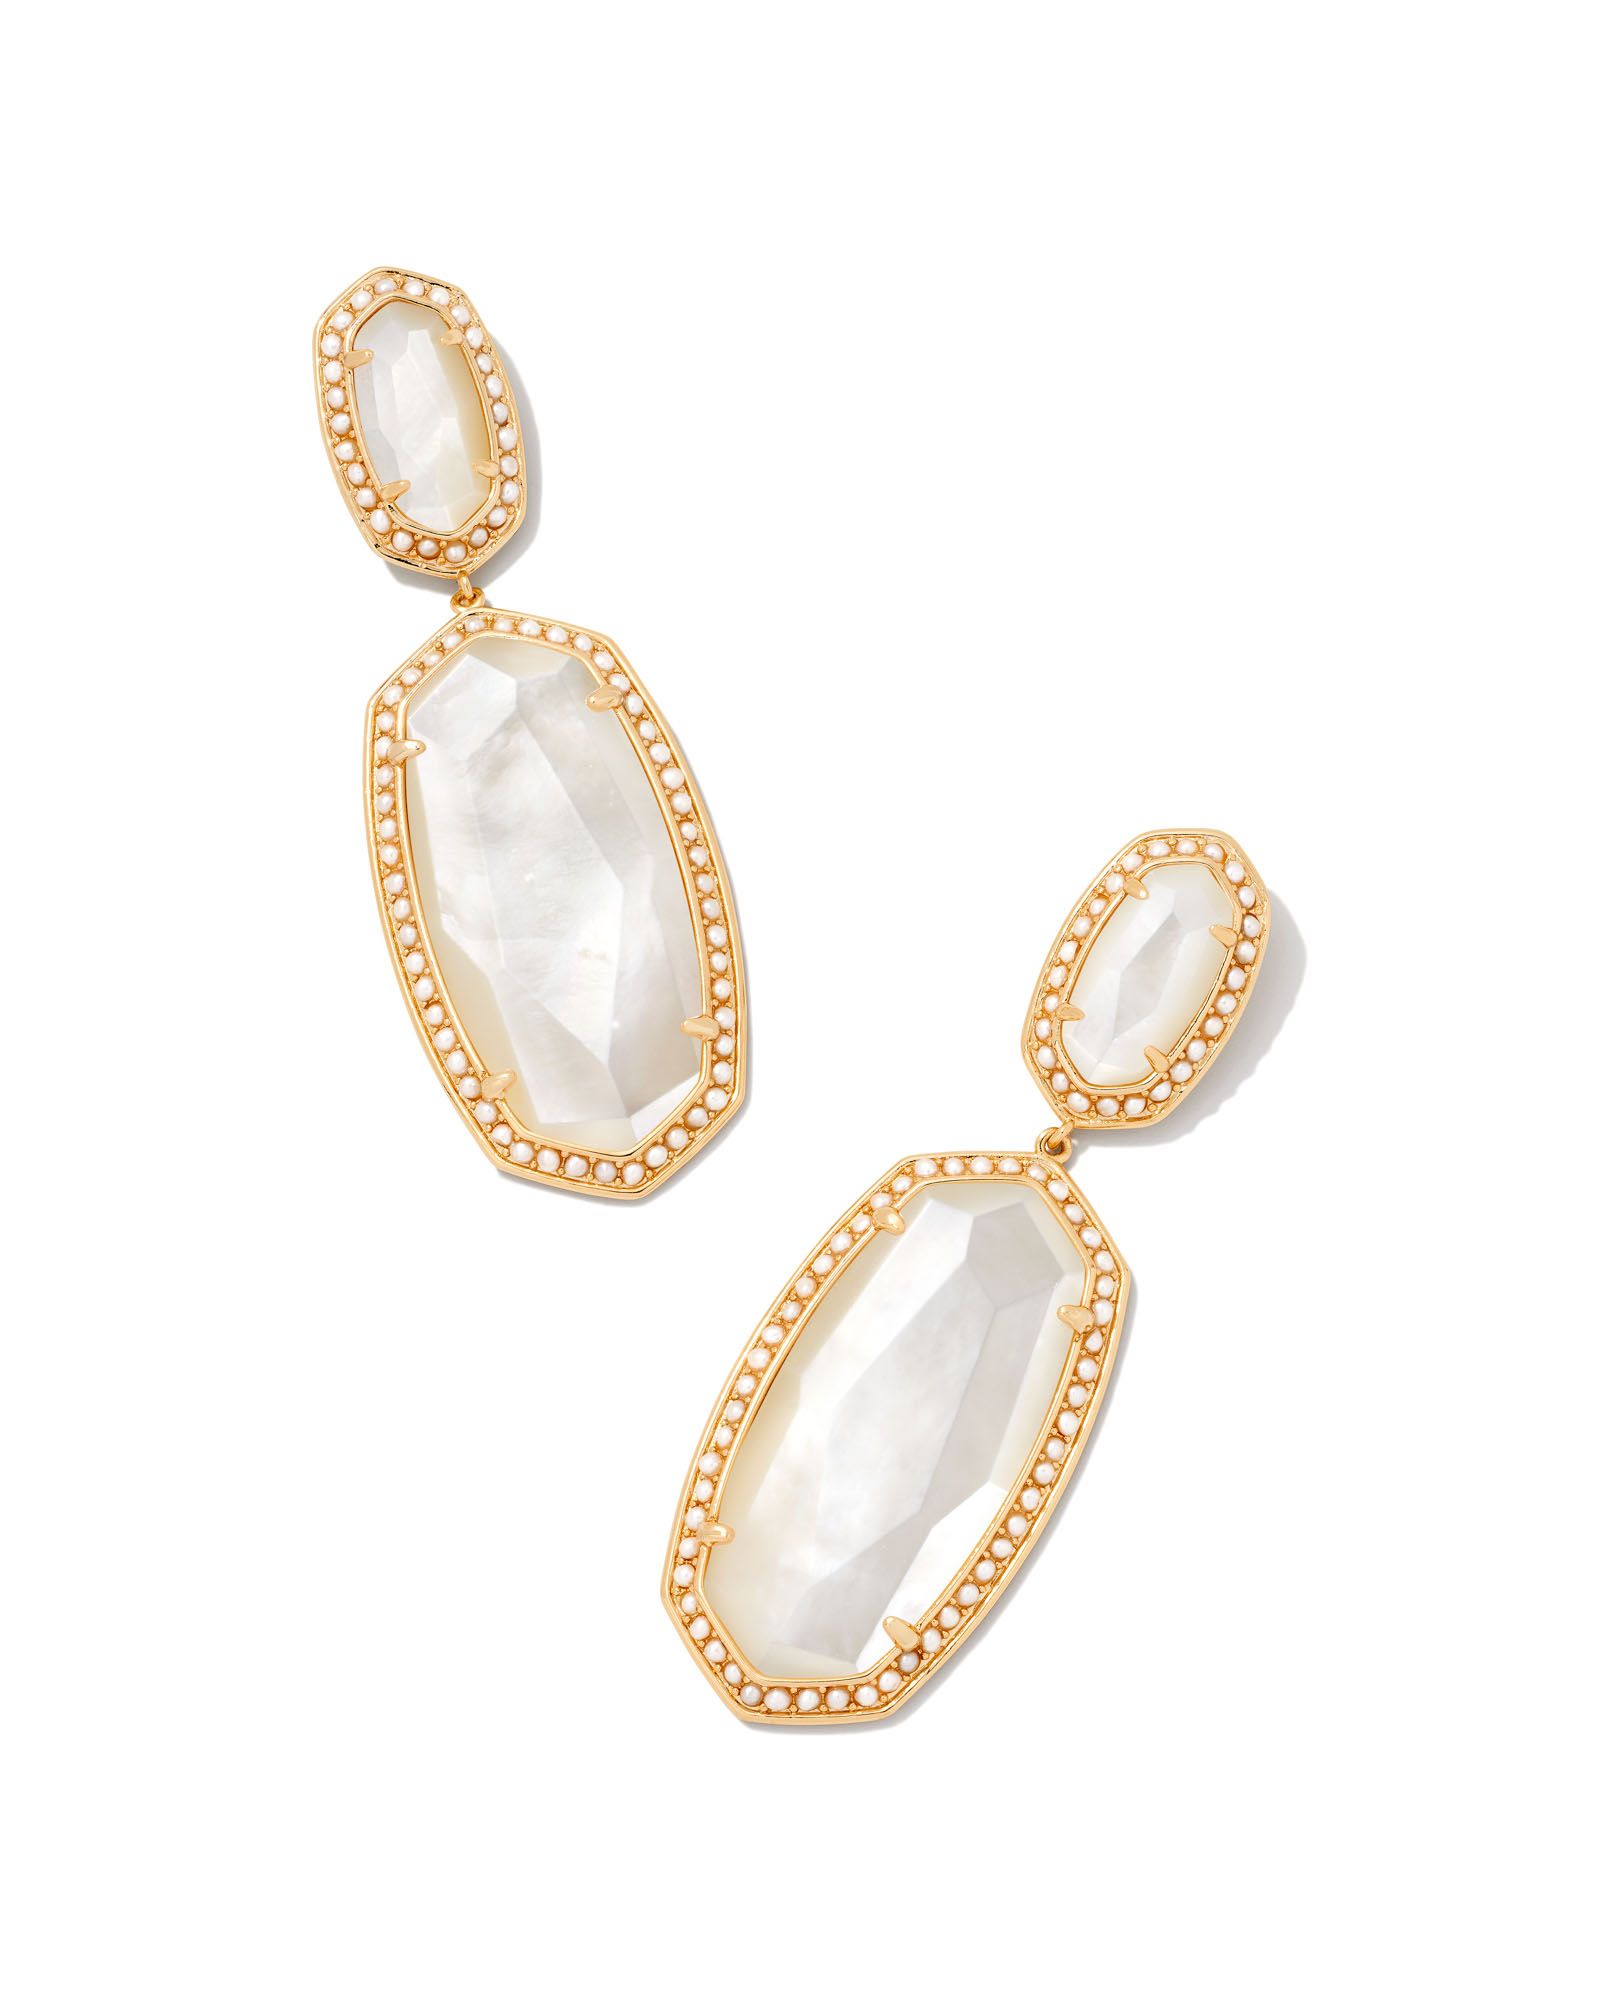 Pearl Beaded Elle Gold Statement Earrings in Ivory Mother-of-Pearl | Kendra Scott | Kendra Scott